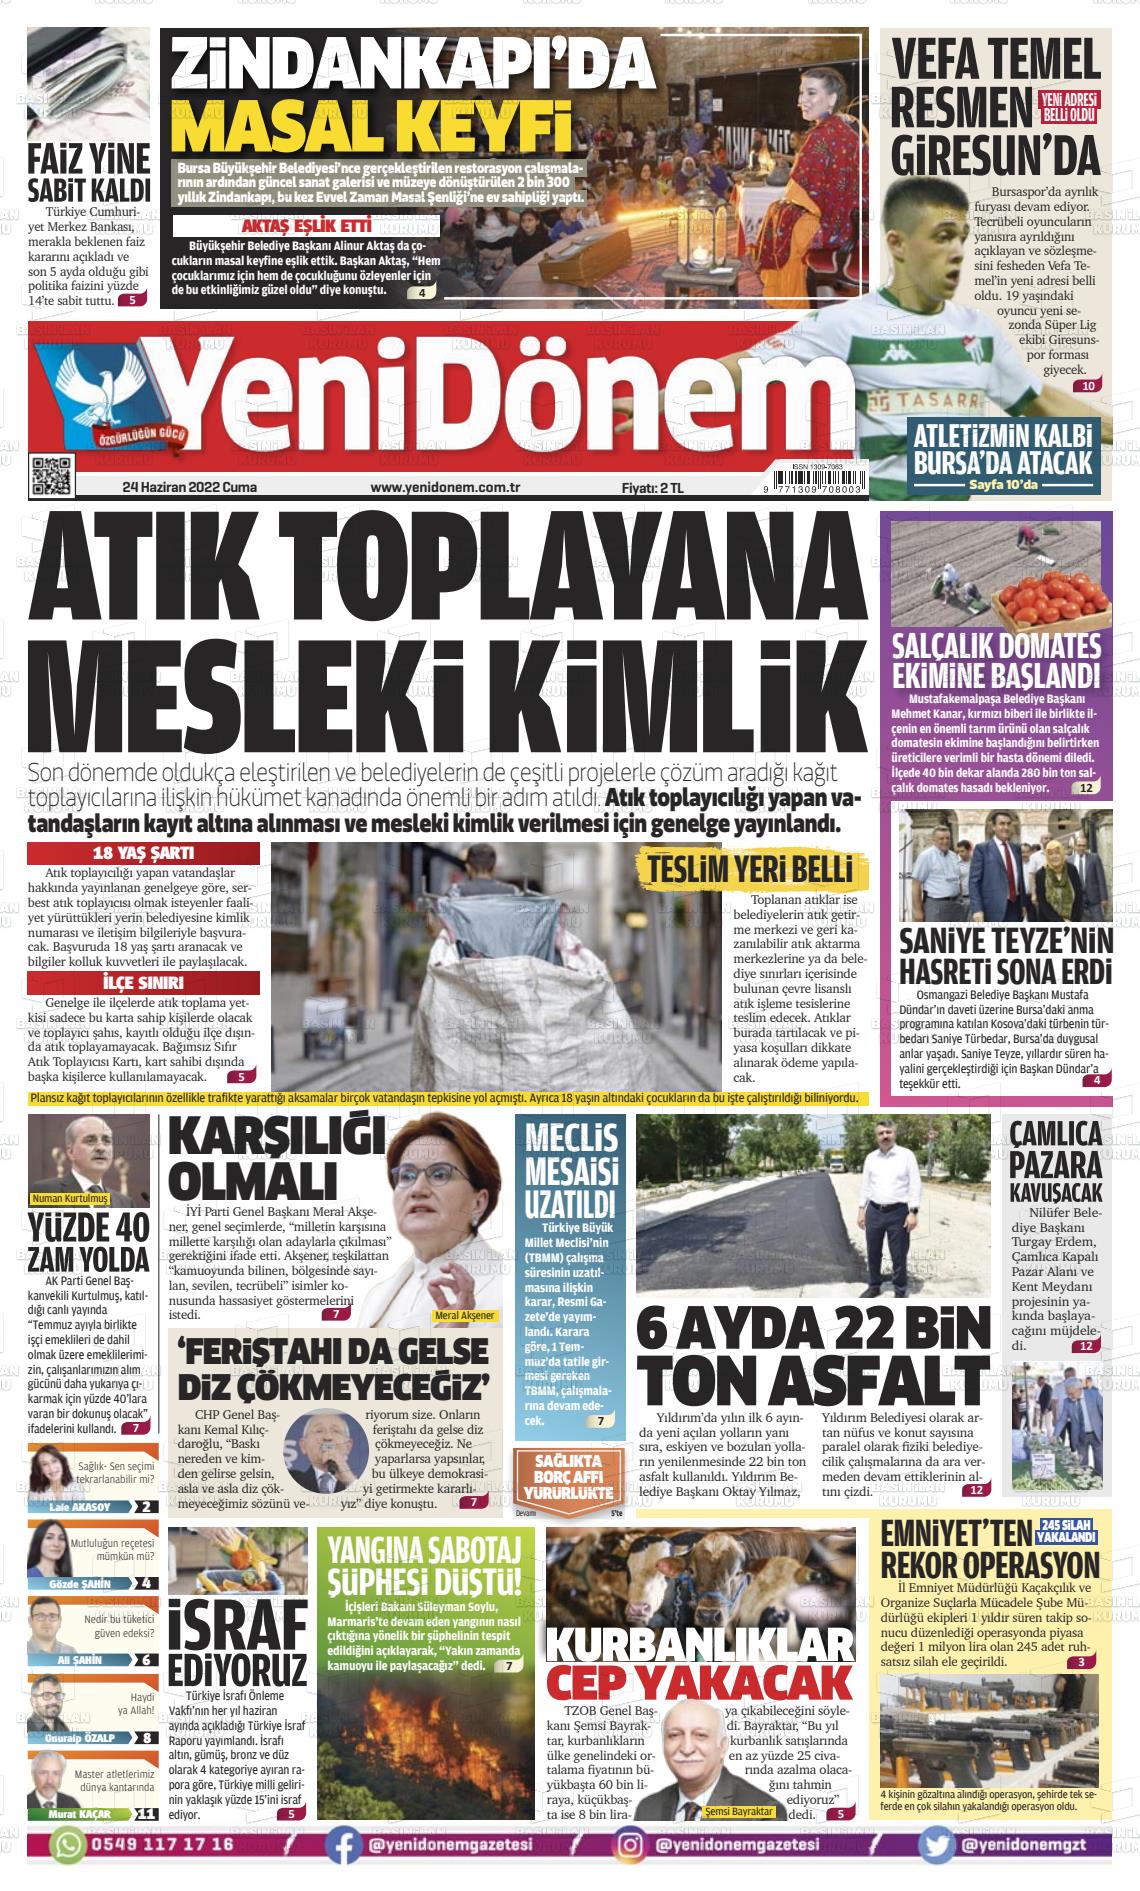 24 Haziran 2022 Yeni Dönem Gazete Manşeti